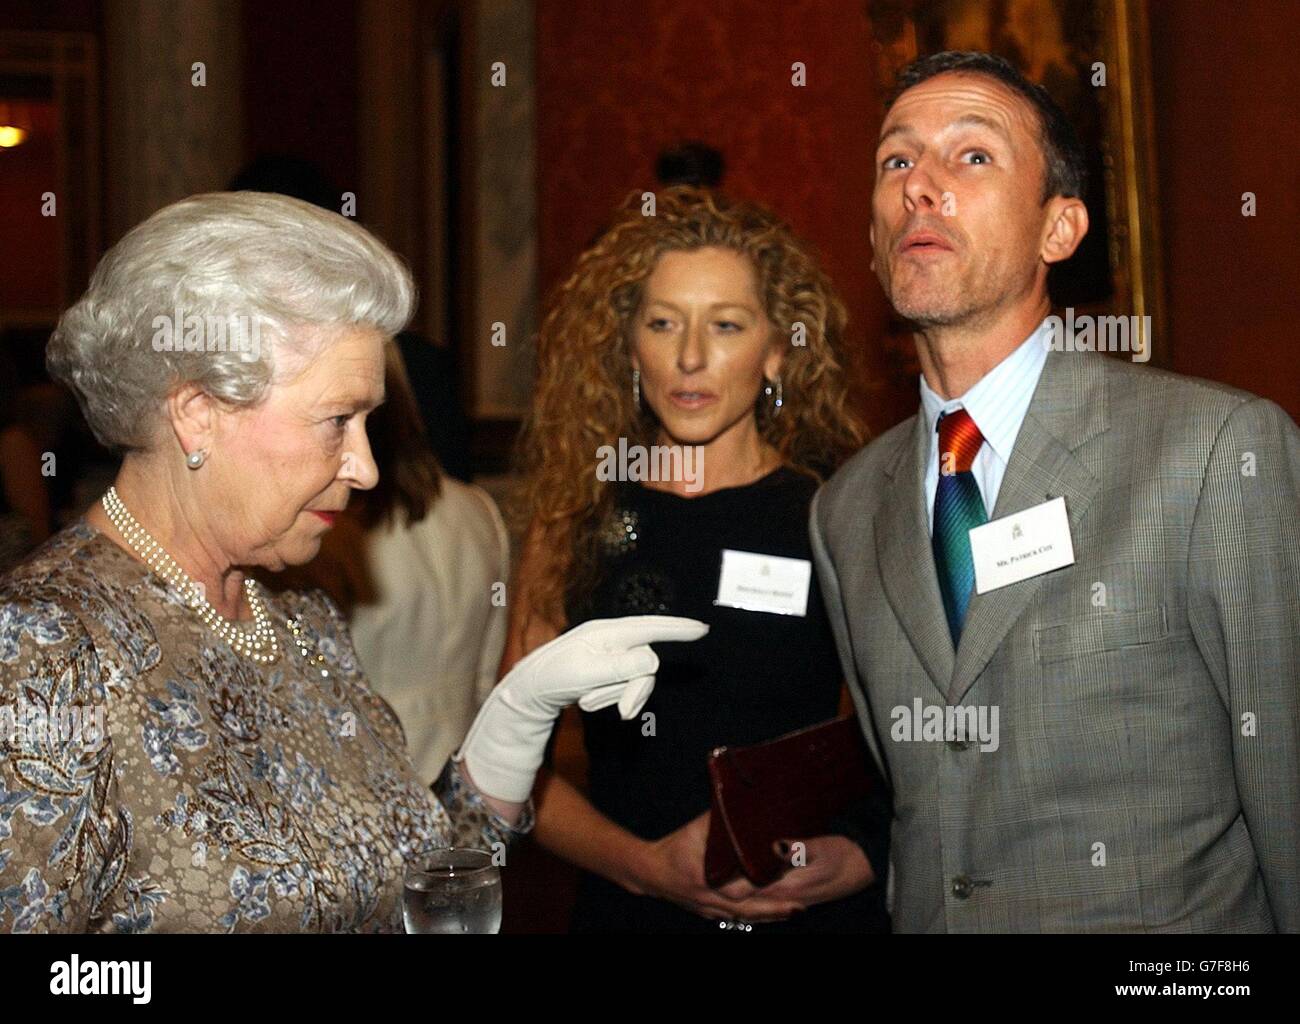 La reine Elizabeth II de Grande-Bretagne rencontre les designers Patrick Cox et Kelly Hoppen lors d'une réception à Buckingham Palace, Londres, pour souligner la contribution de l'industrie du design britannique. Banque D'Images